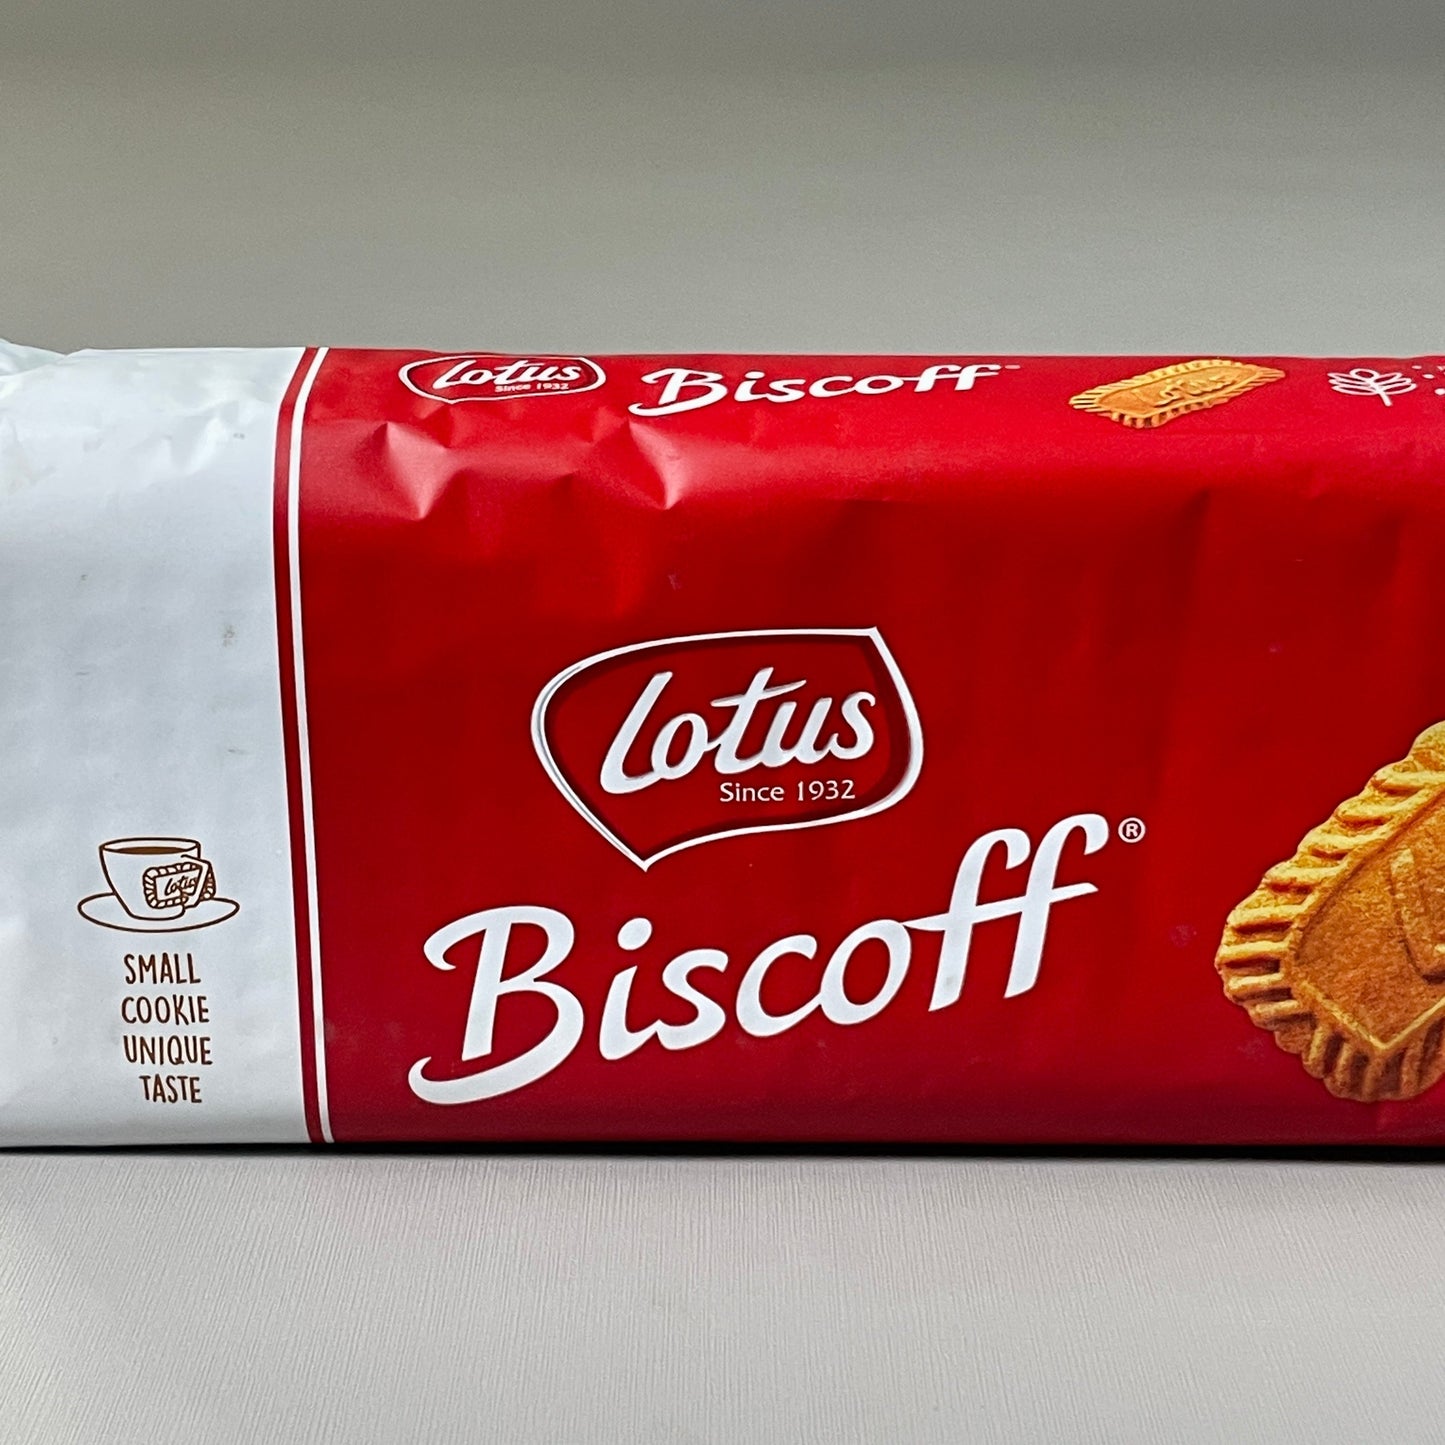 Z@ LOTUS BISCOFF European Biscuit Cookies 8.8 oz BB 11/23 (New)